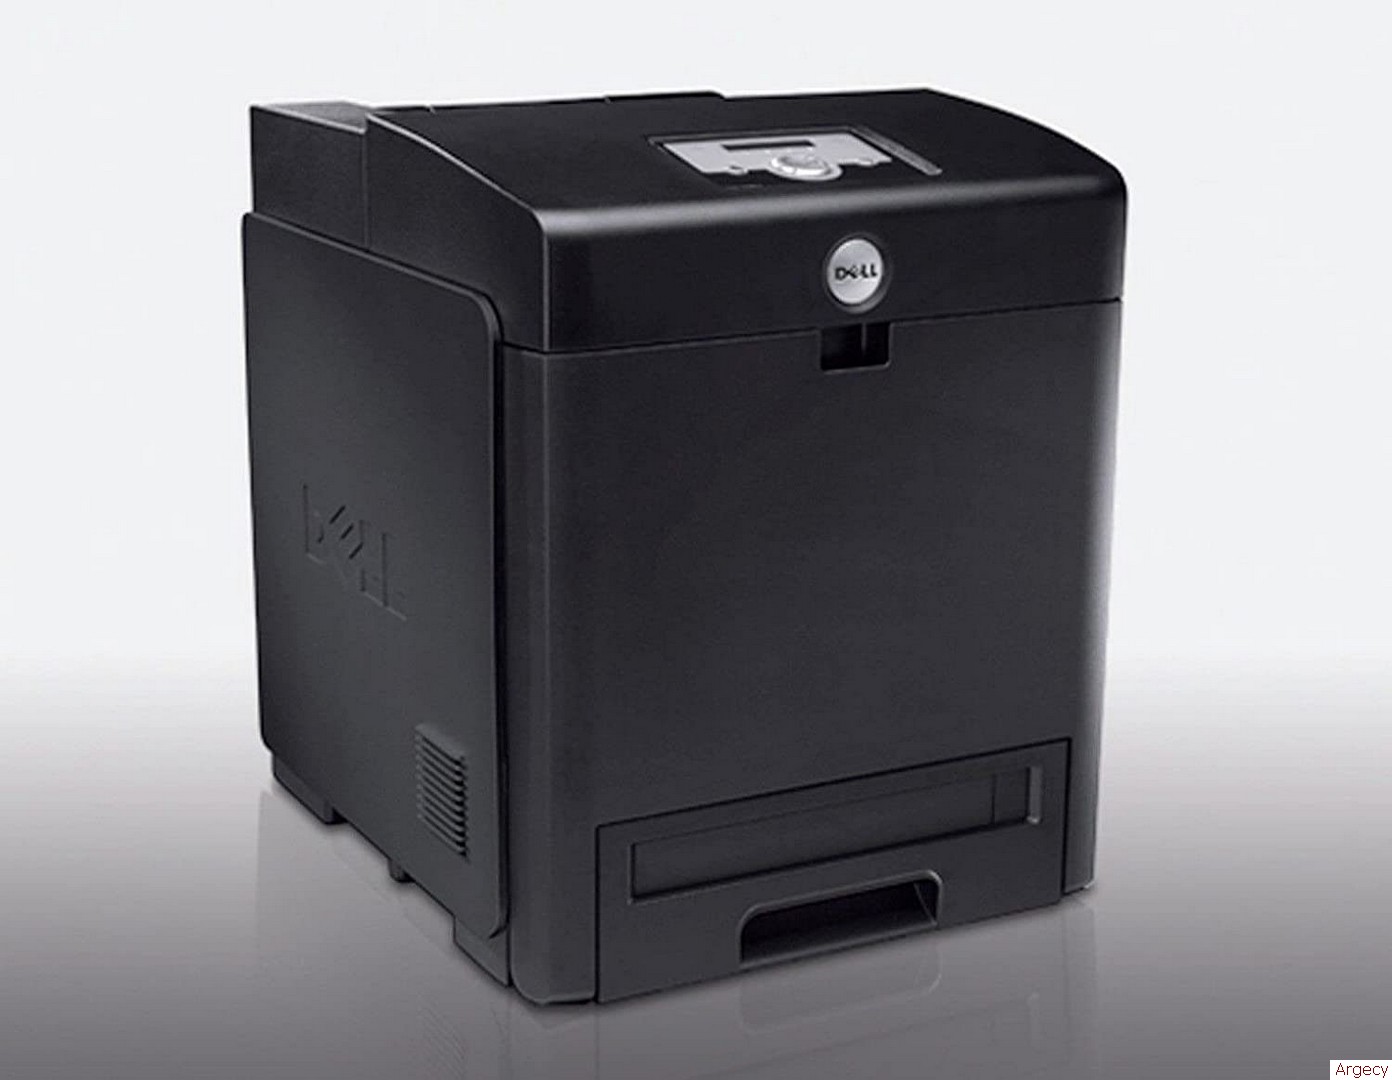 Dell 3130cn Printer